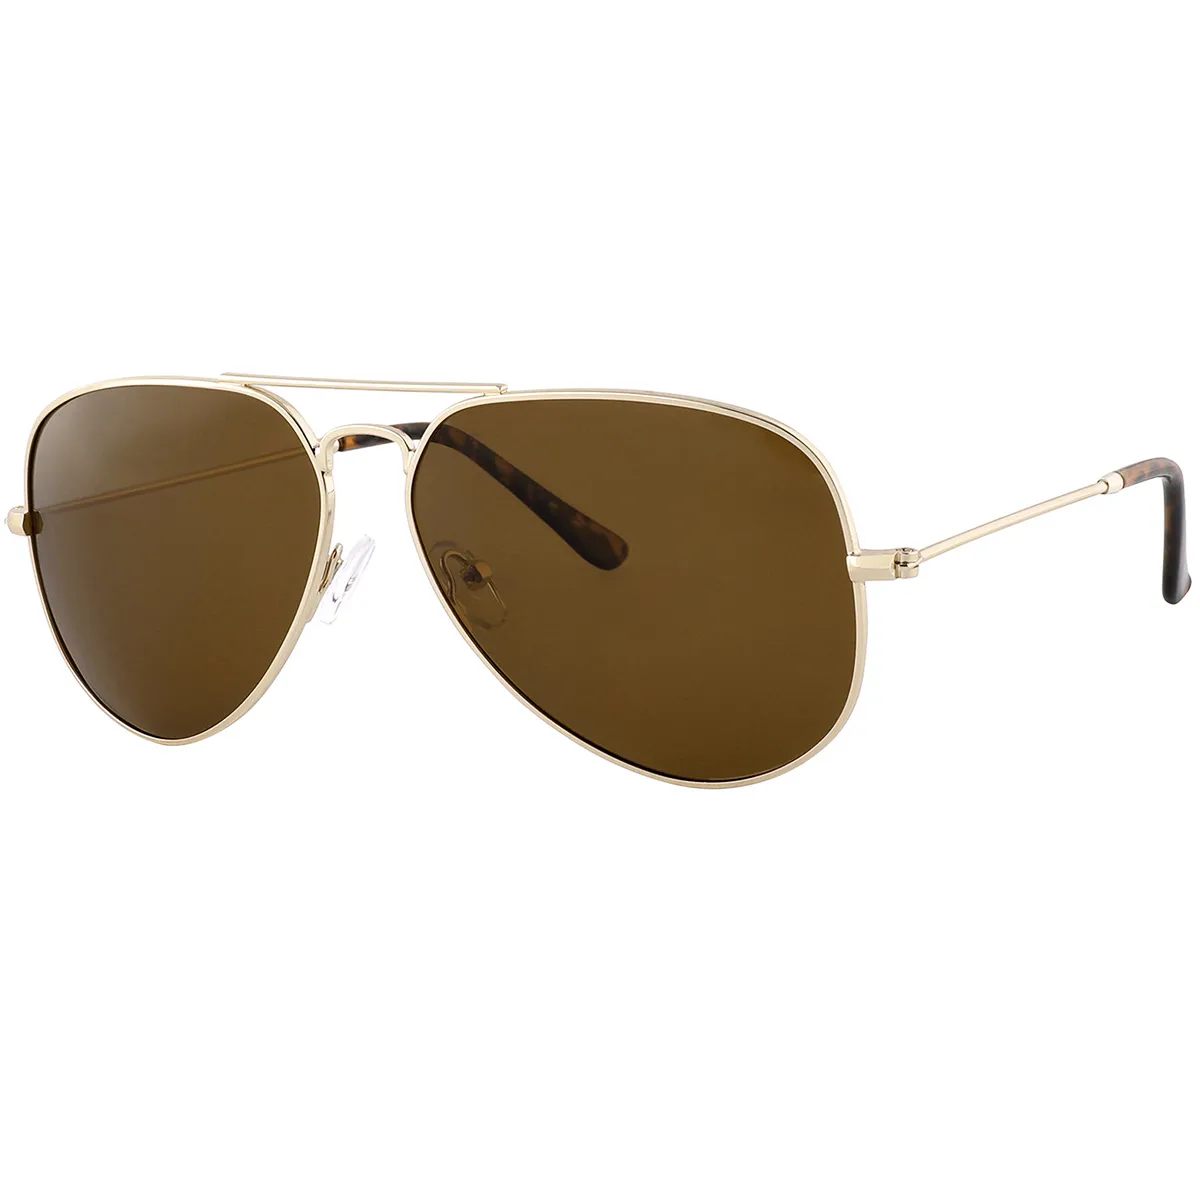 Balboa - Aviator Gold Sunglasses for Men & Women